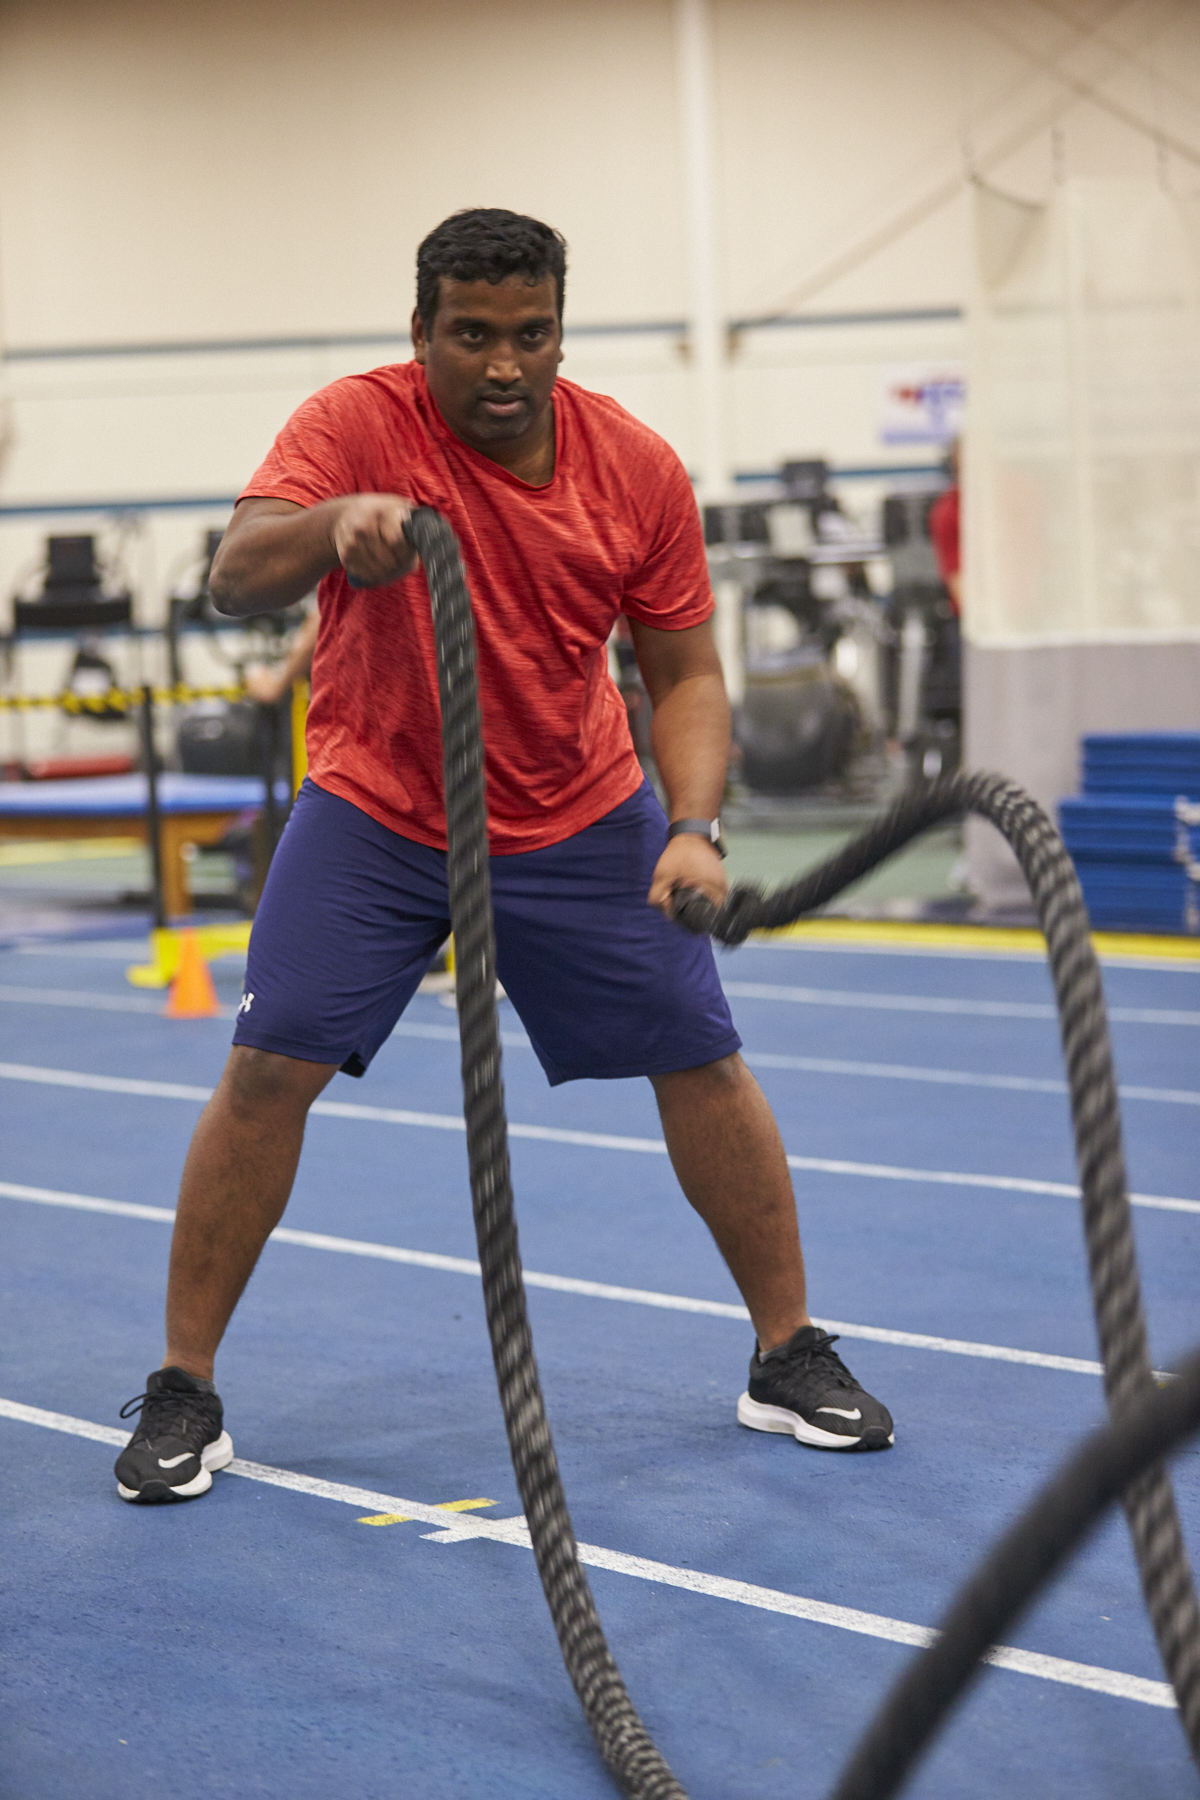 Using Battling Ropes for Training